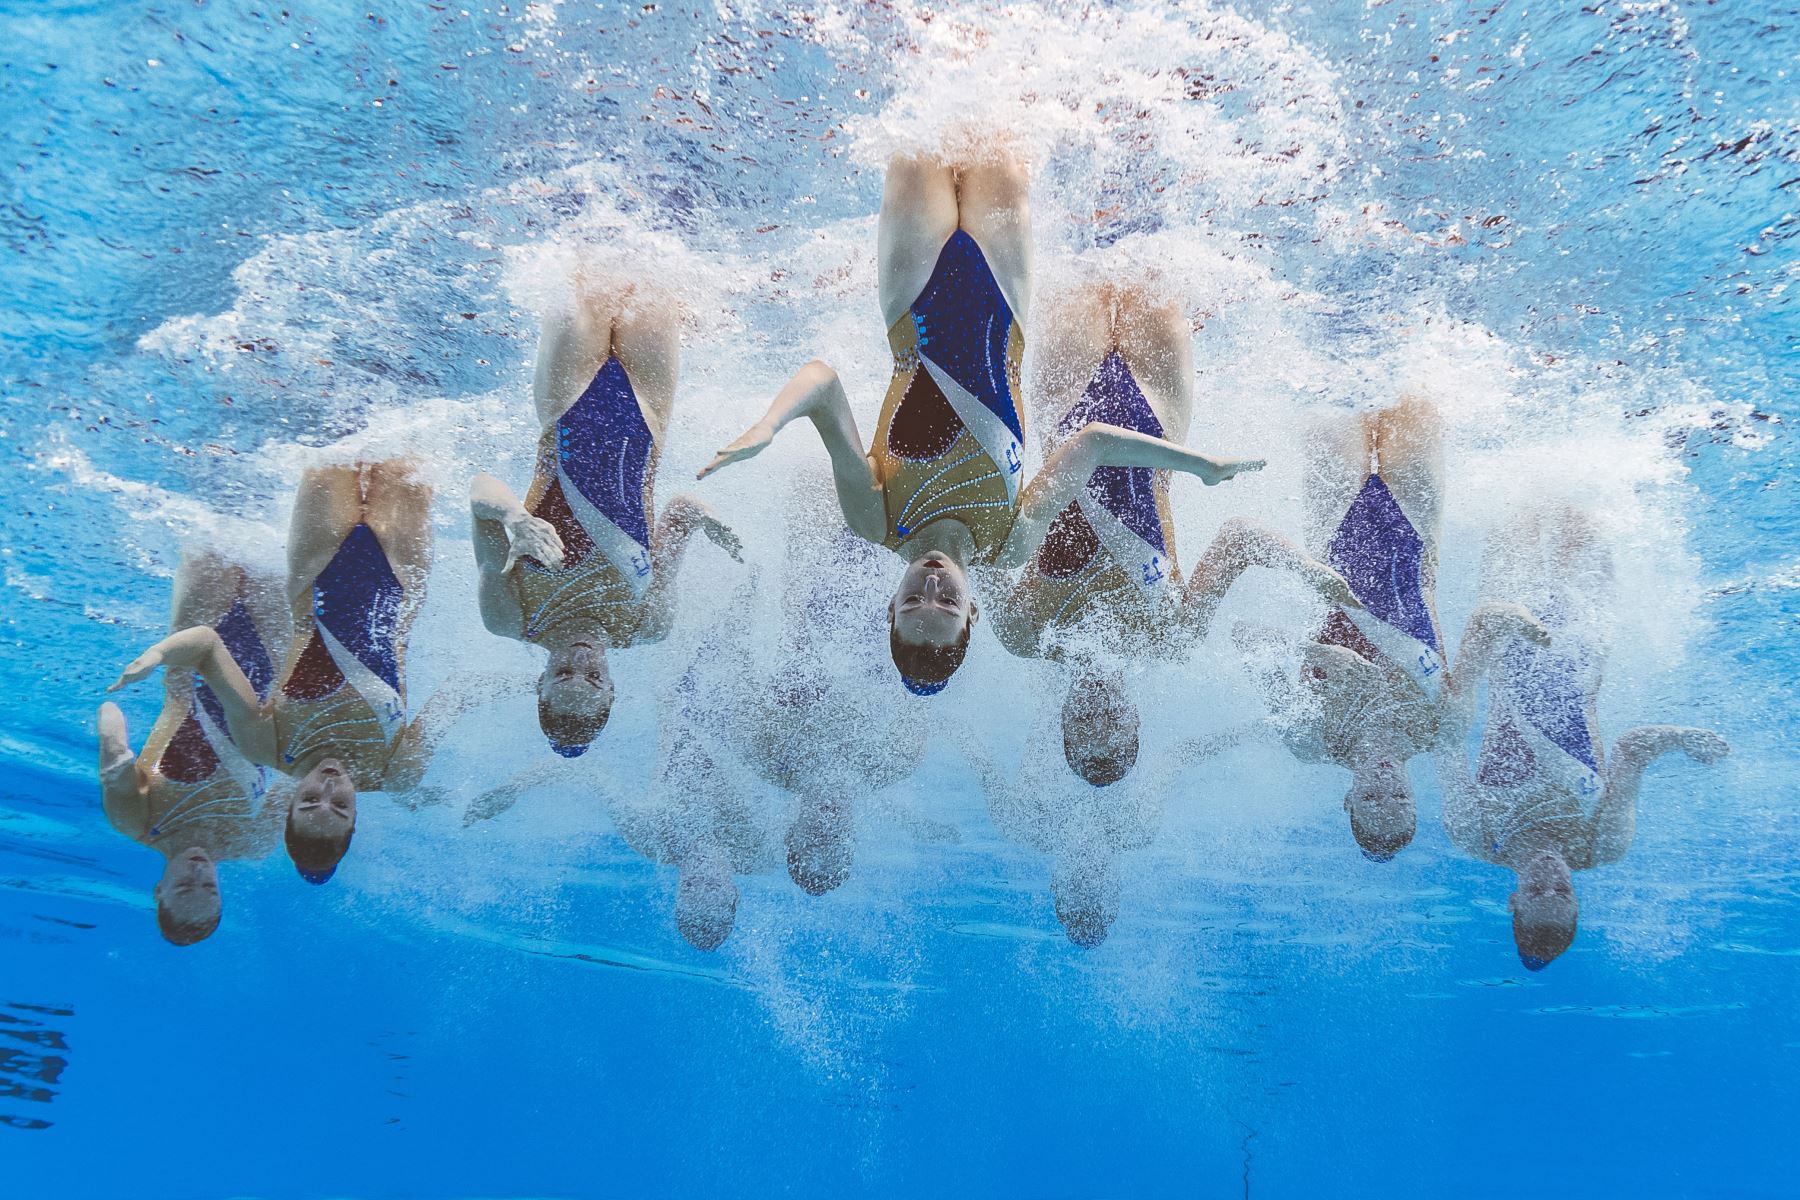 El equipo de Francia compite en la final de natación artística de rutina en el Campeonato Mundial 2019. Foto: AFP